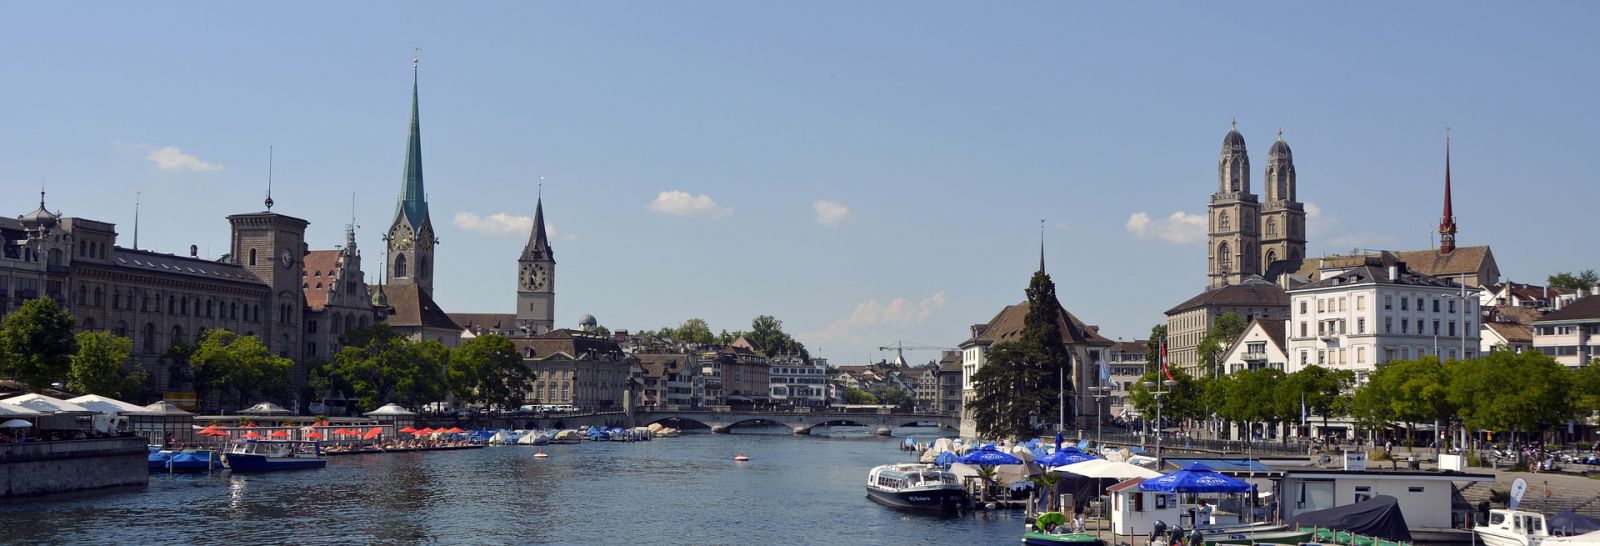 In Zürich Stadt eine Mulde bestellen. Kiche, See, Fluss, Boote, Häuser, Himmel